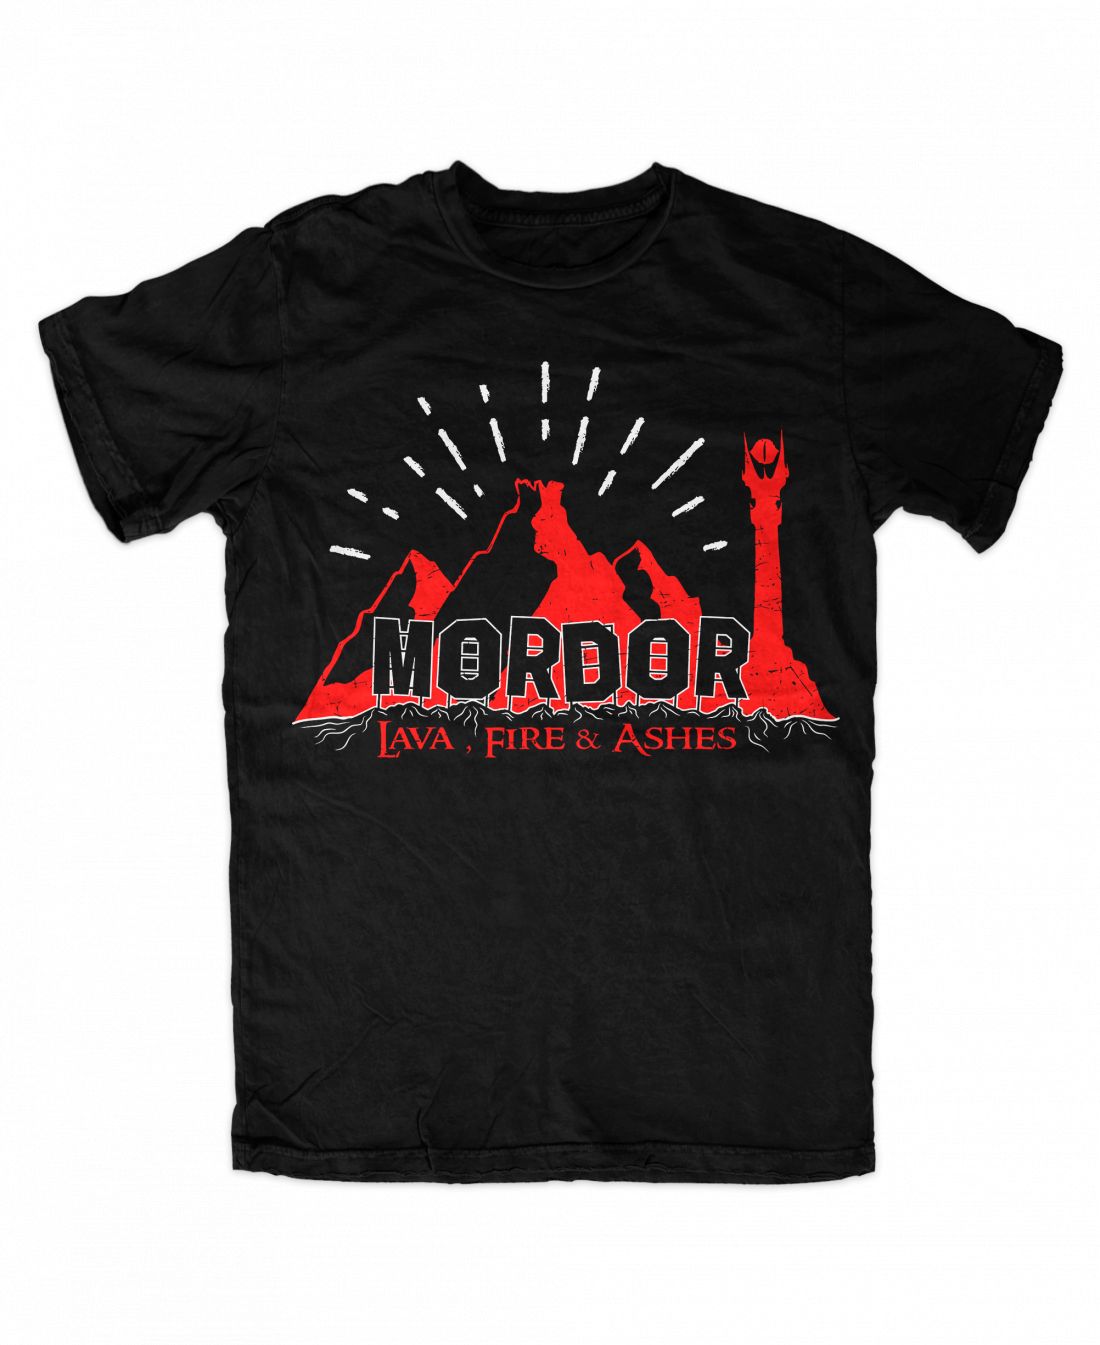 Mordor 001